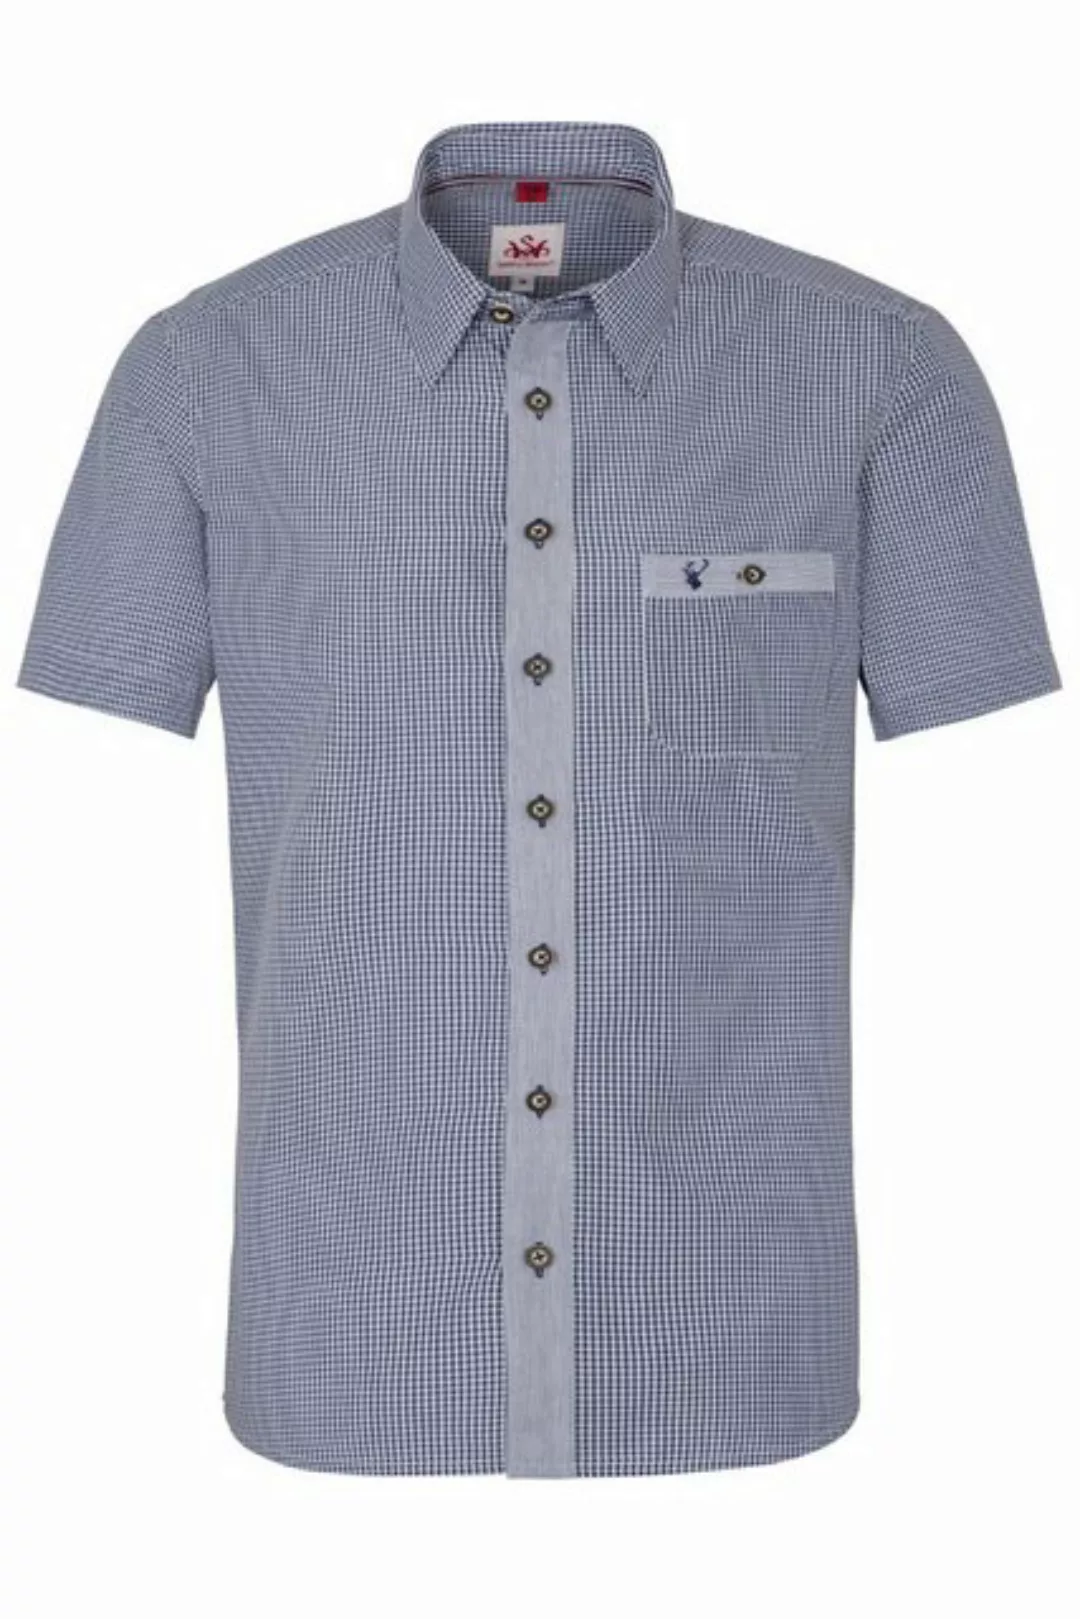 Spieth & Wensky Trachtenhemd Trachtenhemd - DORF KA - dunkelblau, dunkelrot günstig online kaufen